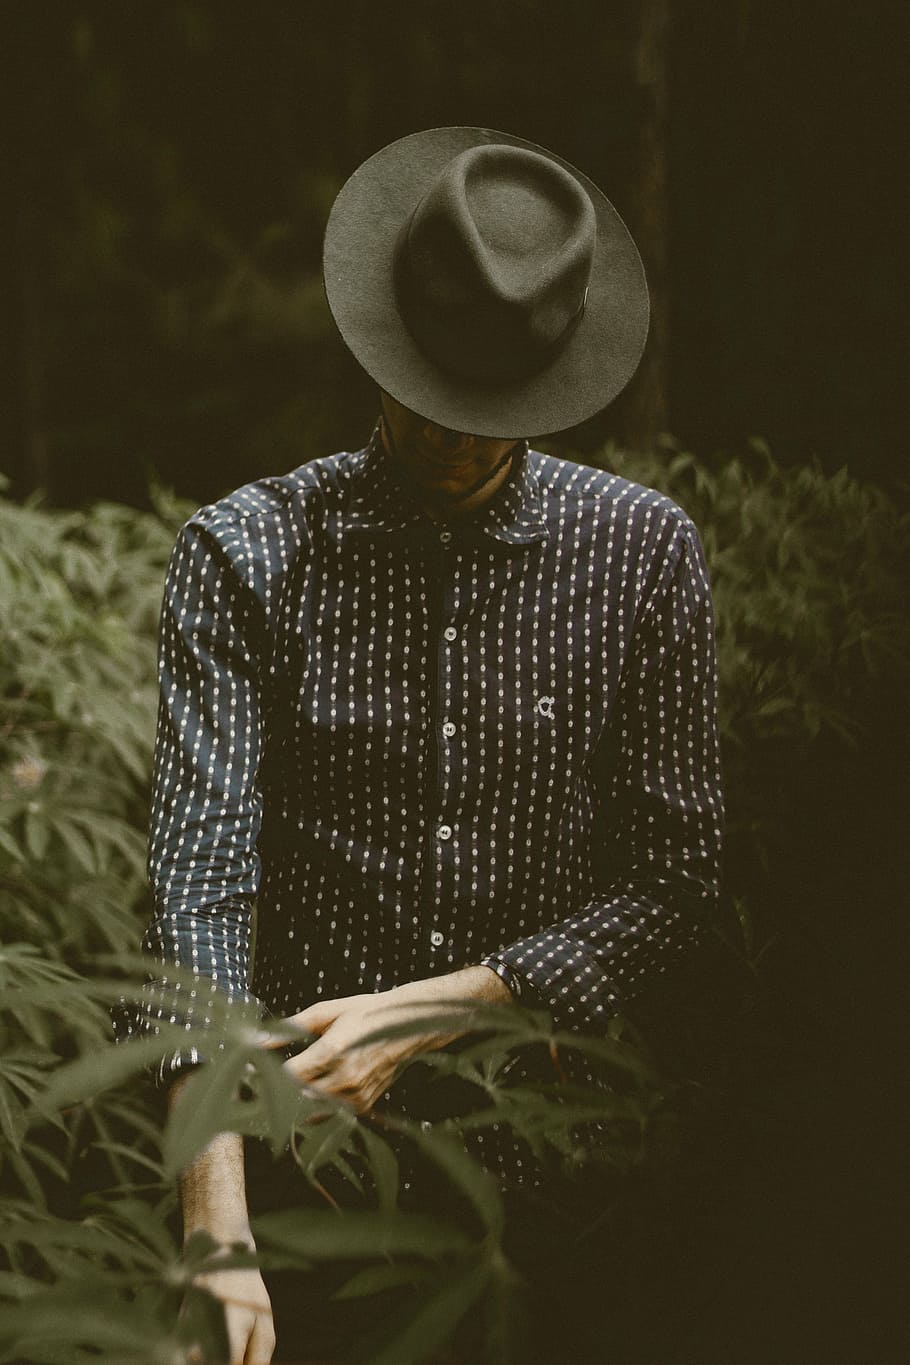 男, 立っている, 横にある, 植物, 人, 自然, 屋外, ファッション, 帽子, 暗い